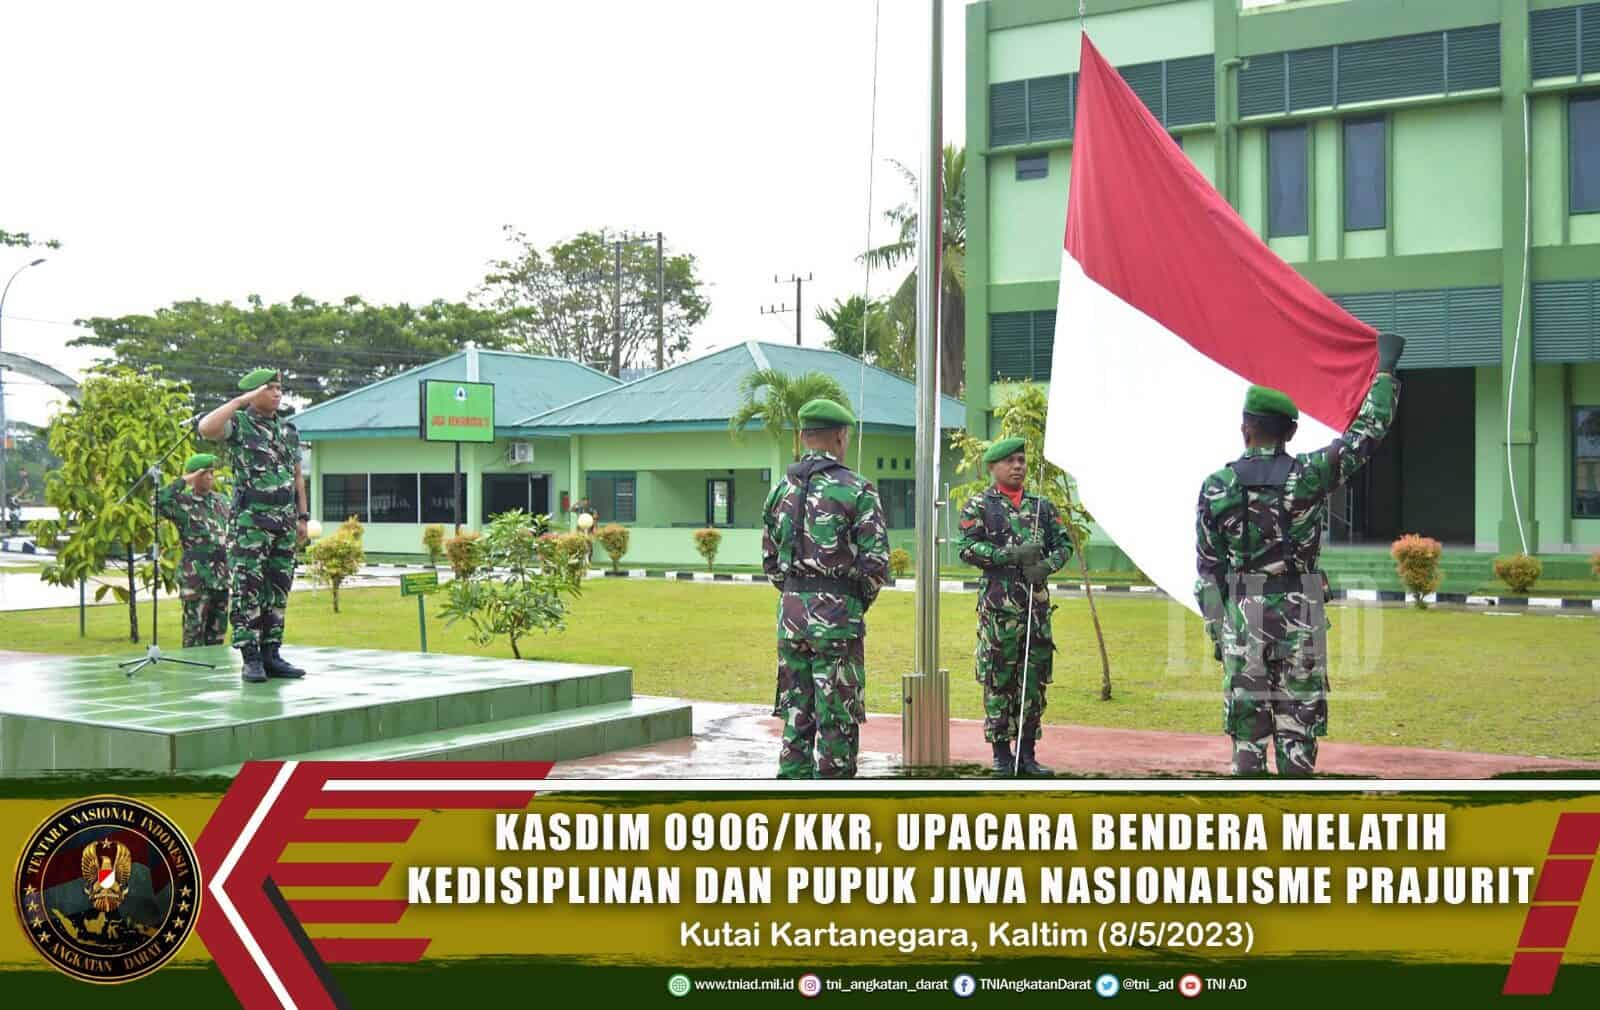 Kasdim 0906/Kkr, Upacara Bendera Melatih Kedisiplinan dan Pupuk Jiwa Nasionalisme Prajurit